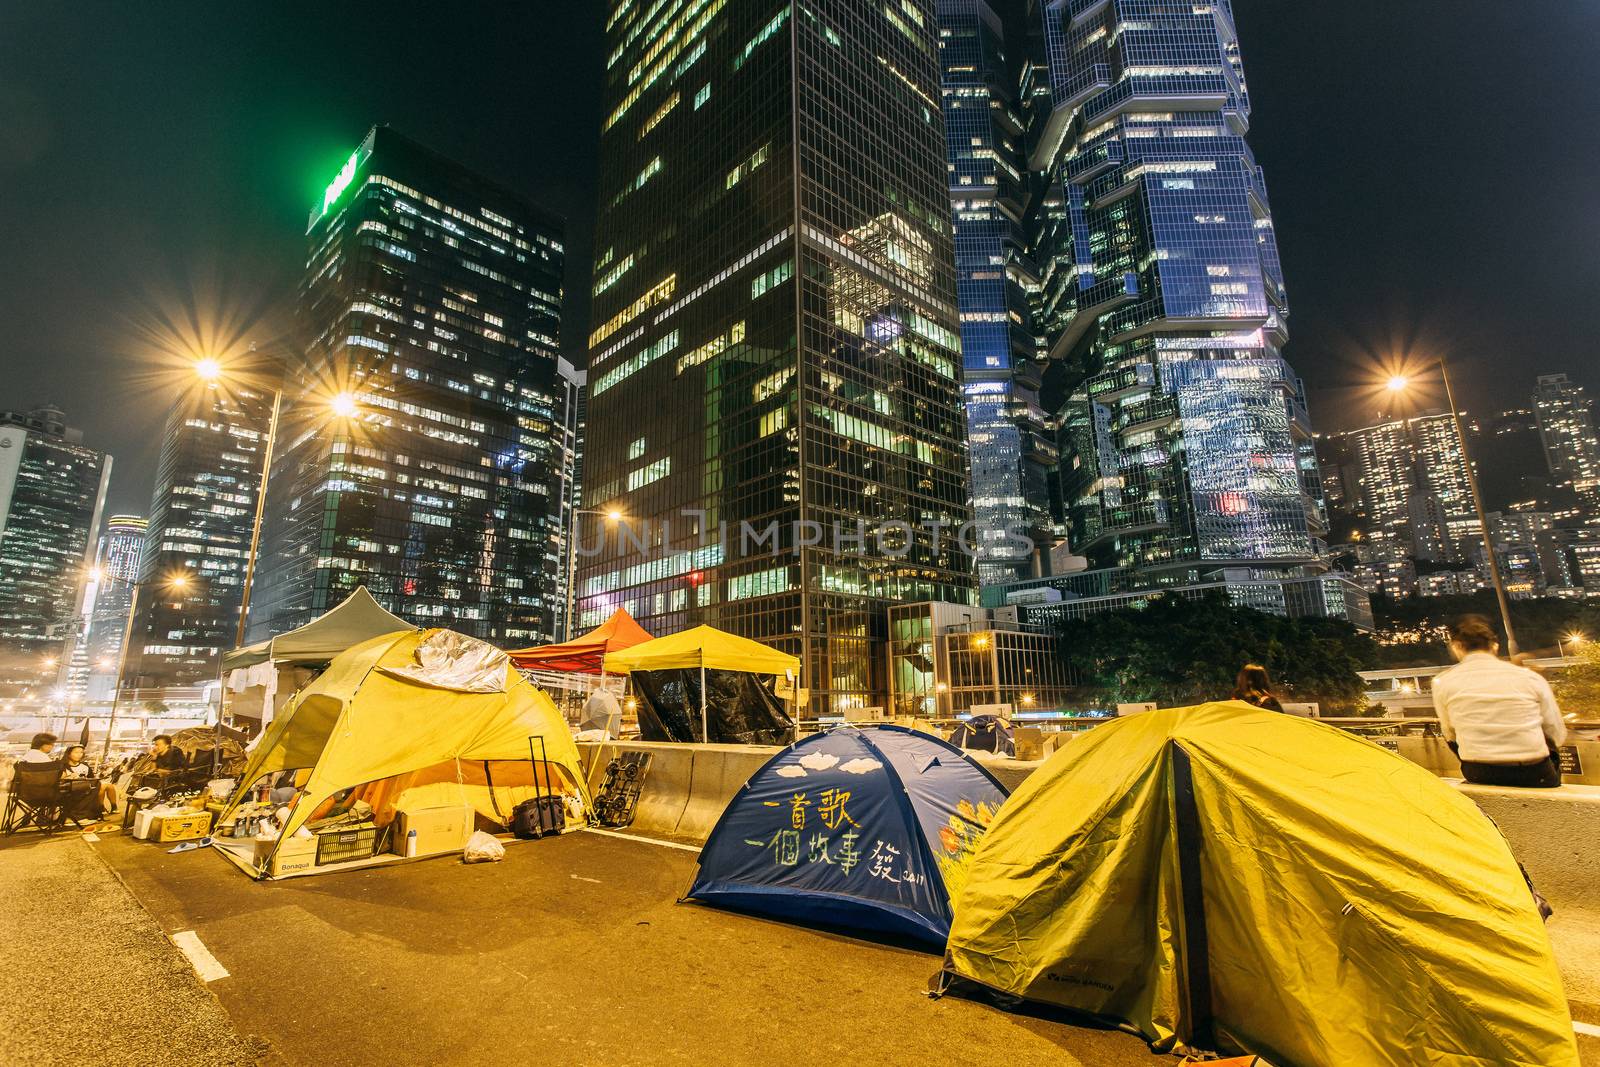 Umbrella Revolution in Hong Kong 2014 by kawing921